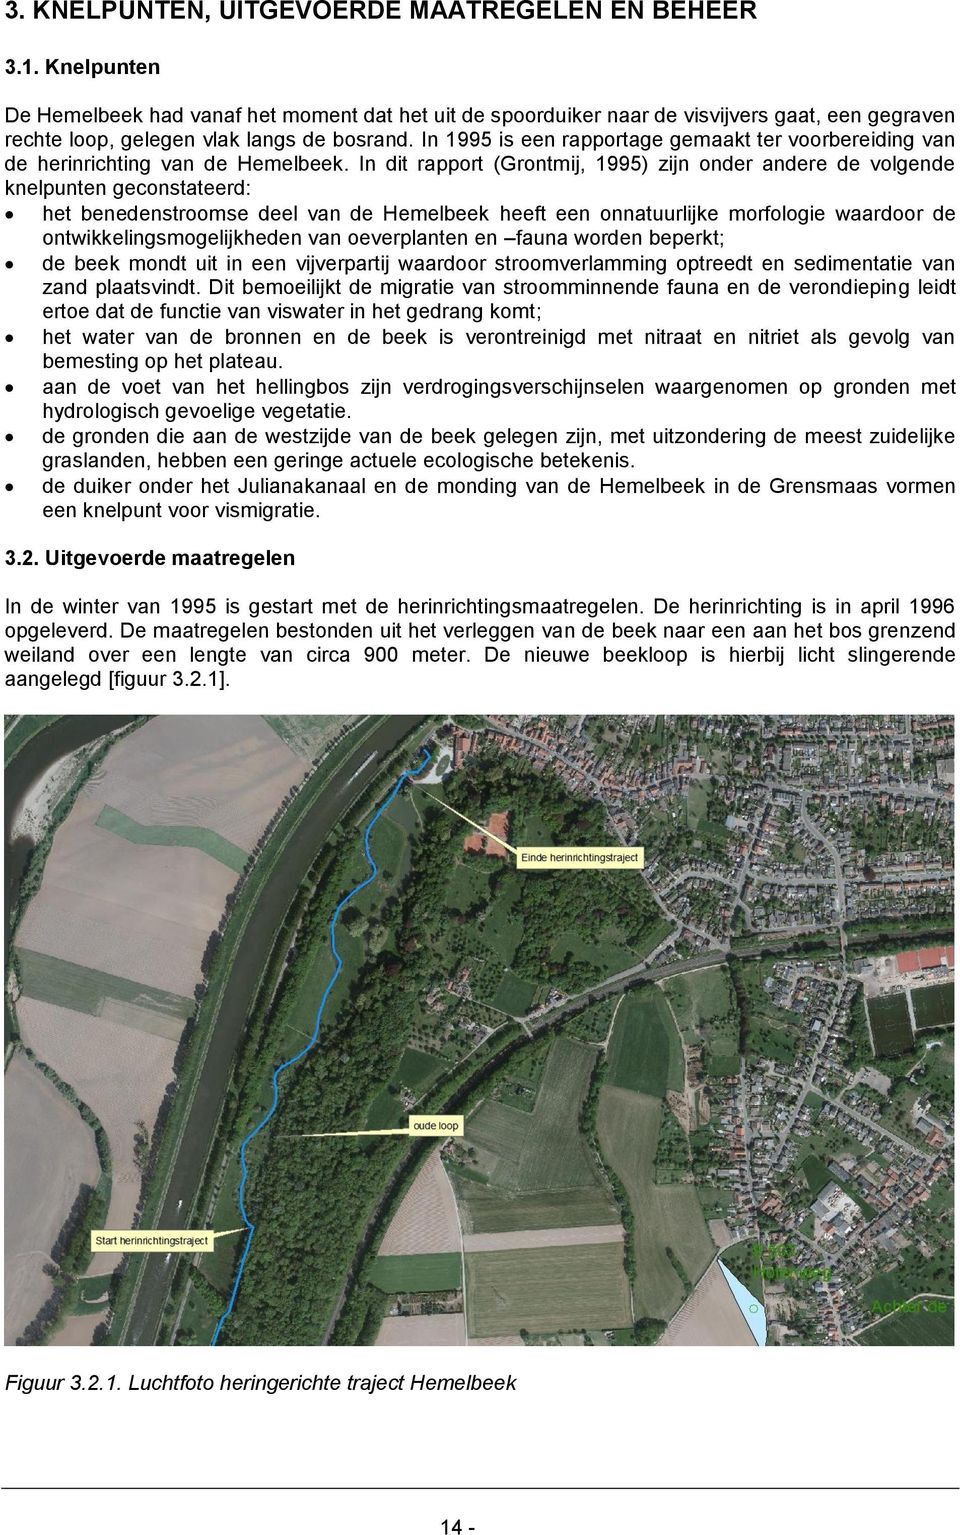 In 1995 is een rapportage gemaakt ter voorbereiding van de herinrichting van de Hemelbeek.